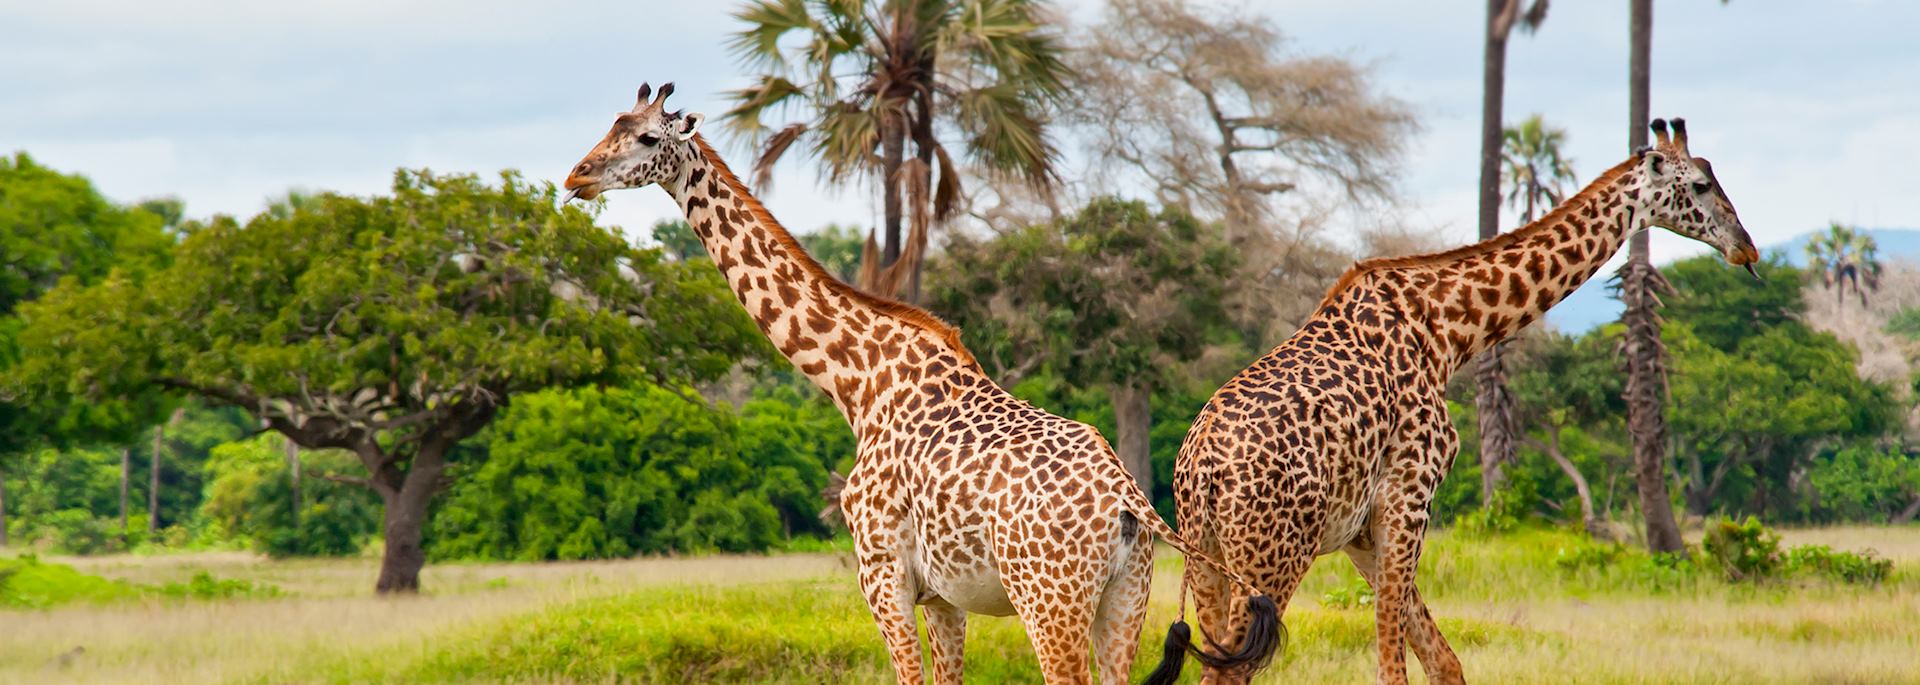 Giraffes in Katavi Naitonal Park